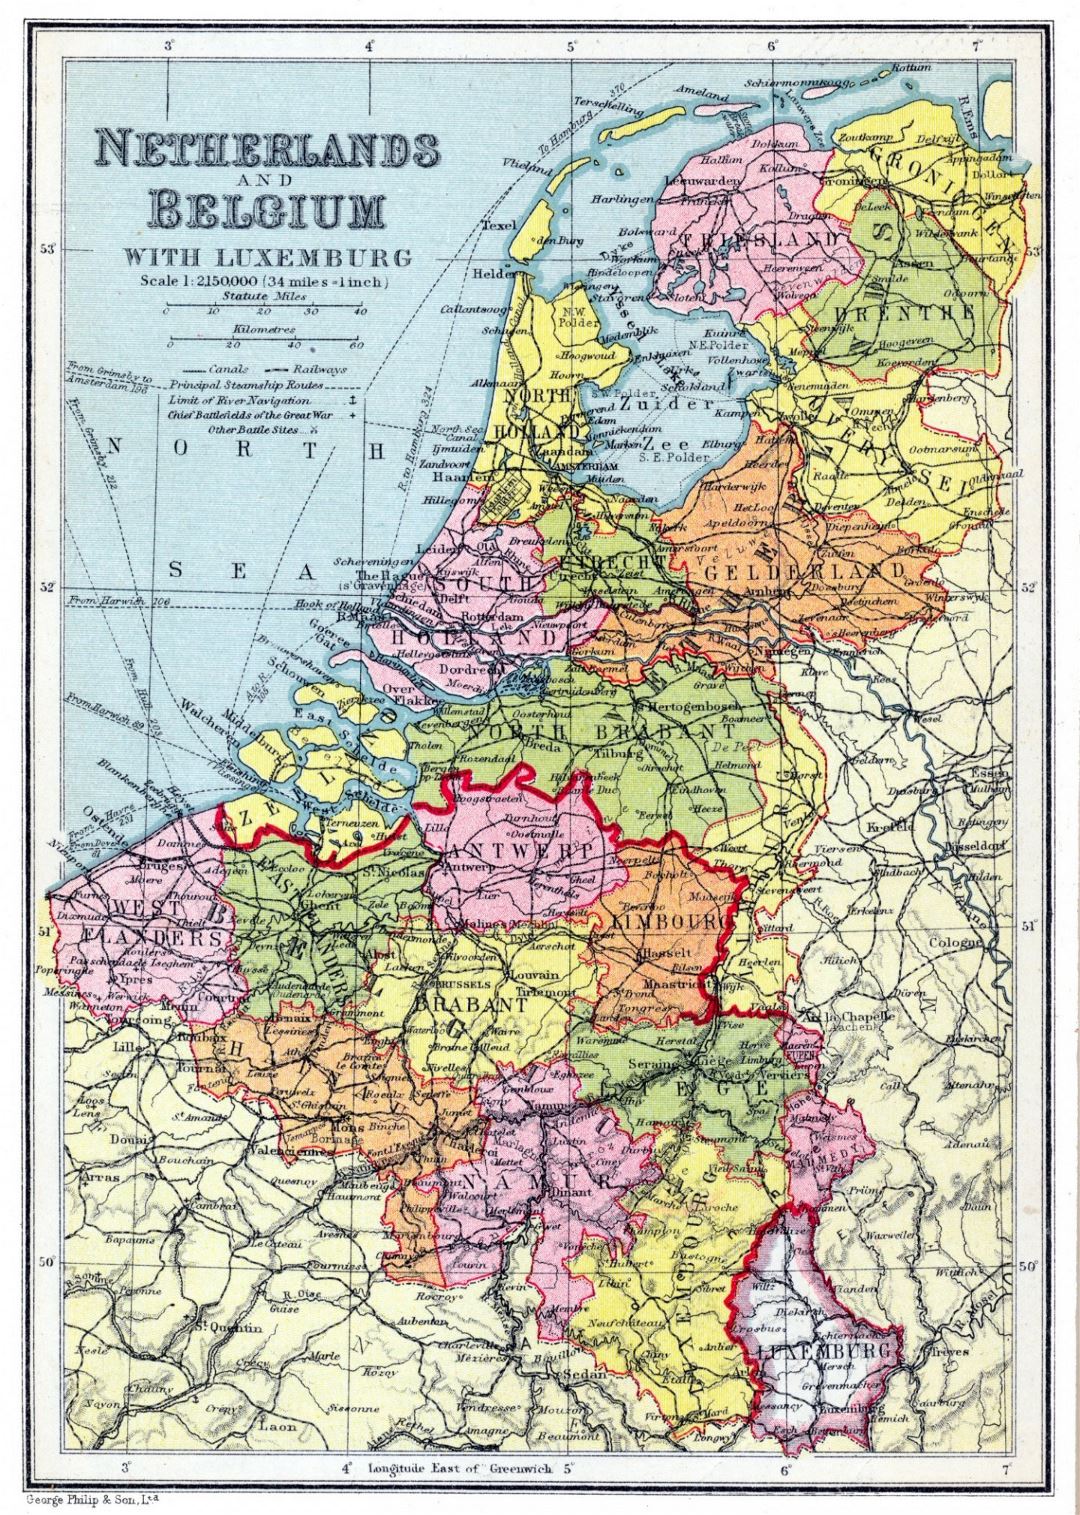 Grande detallado mapa político y administrativo antiguo de Holanda y Bélgica